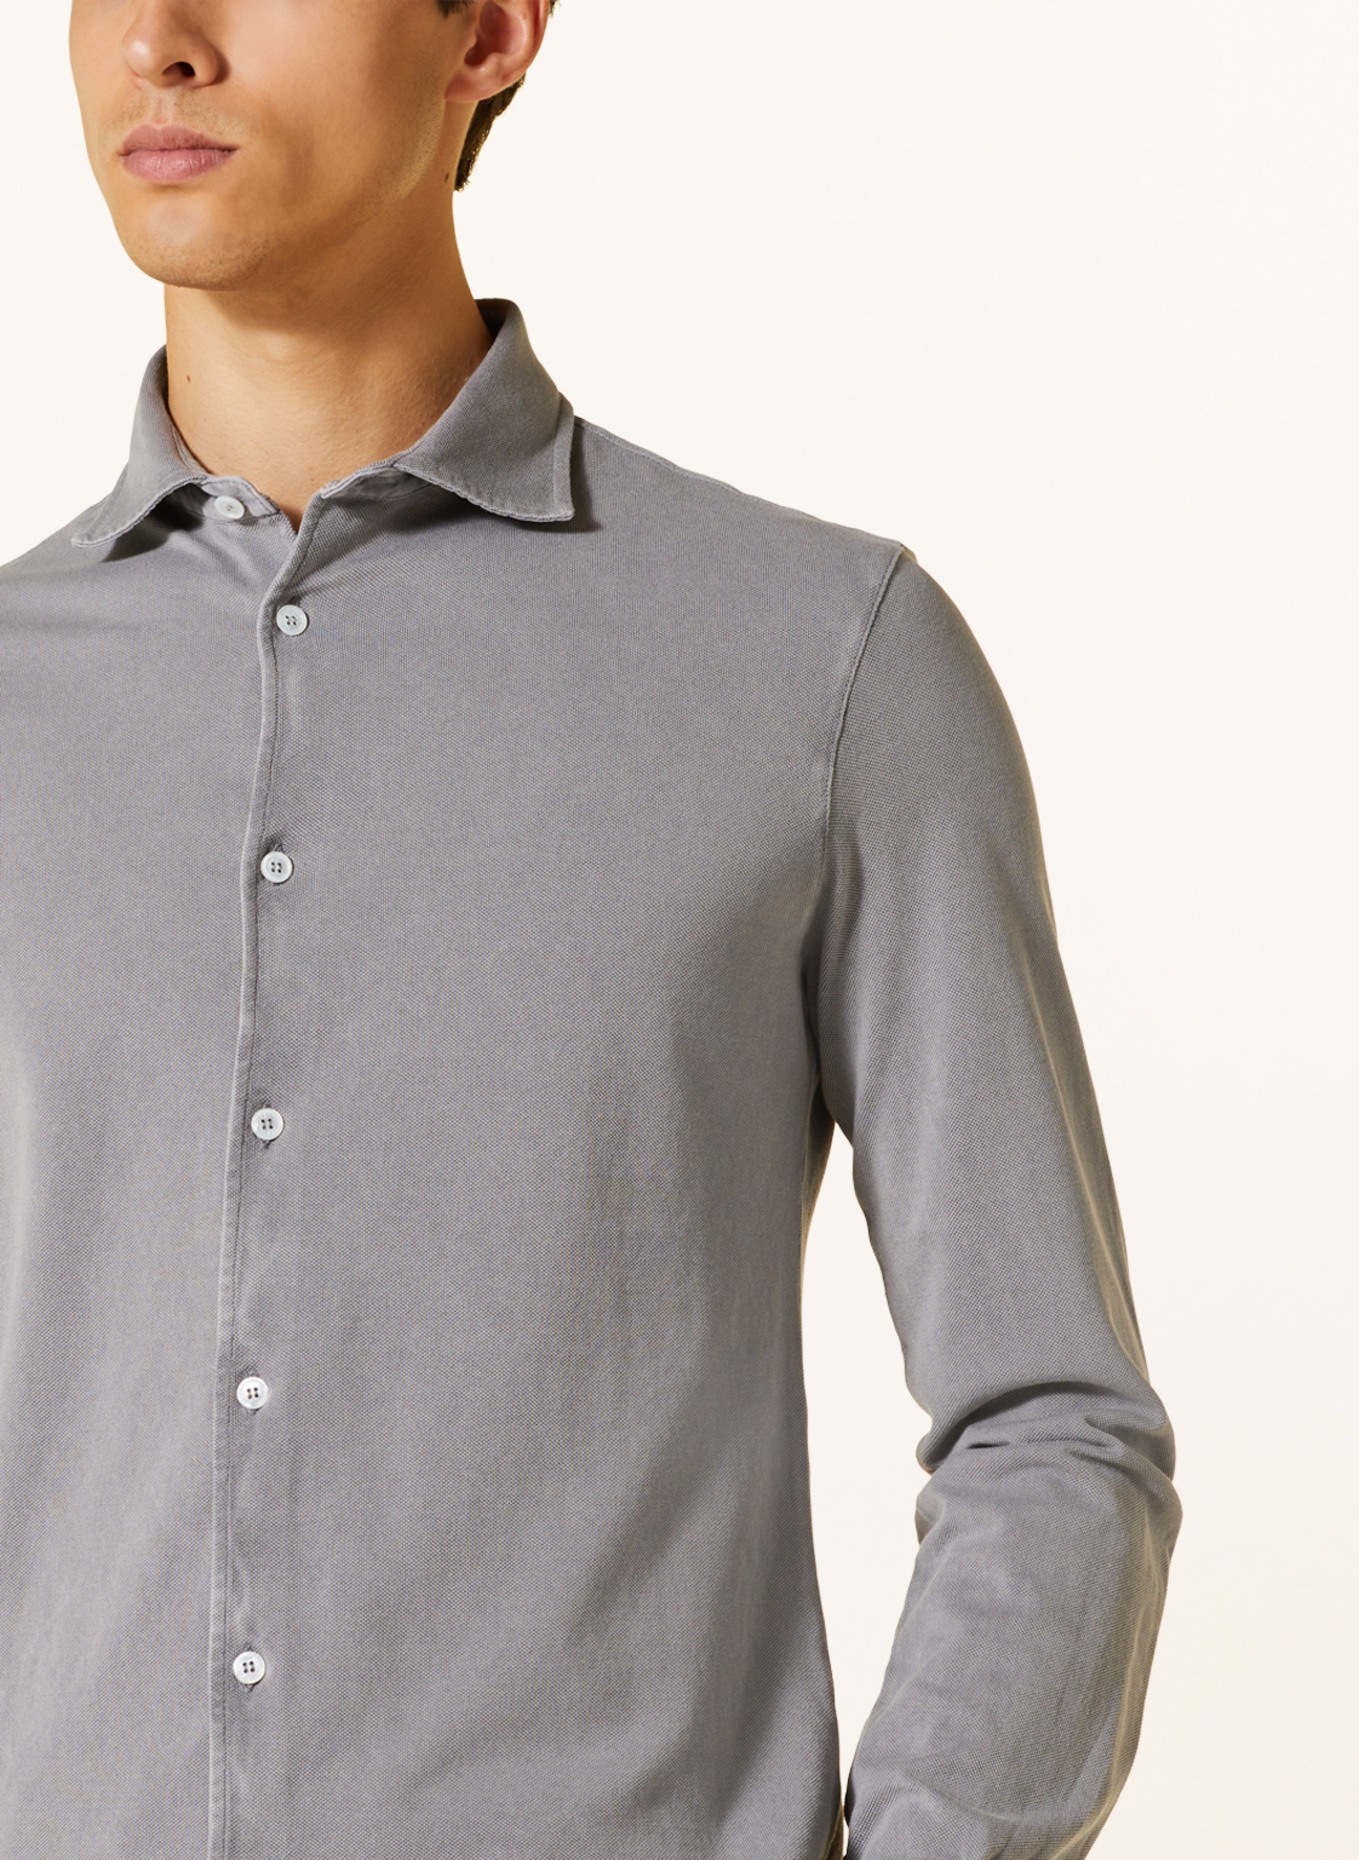 FEDELI Piqué shirt slim fit, Color: TAUPE (Image 4)